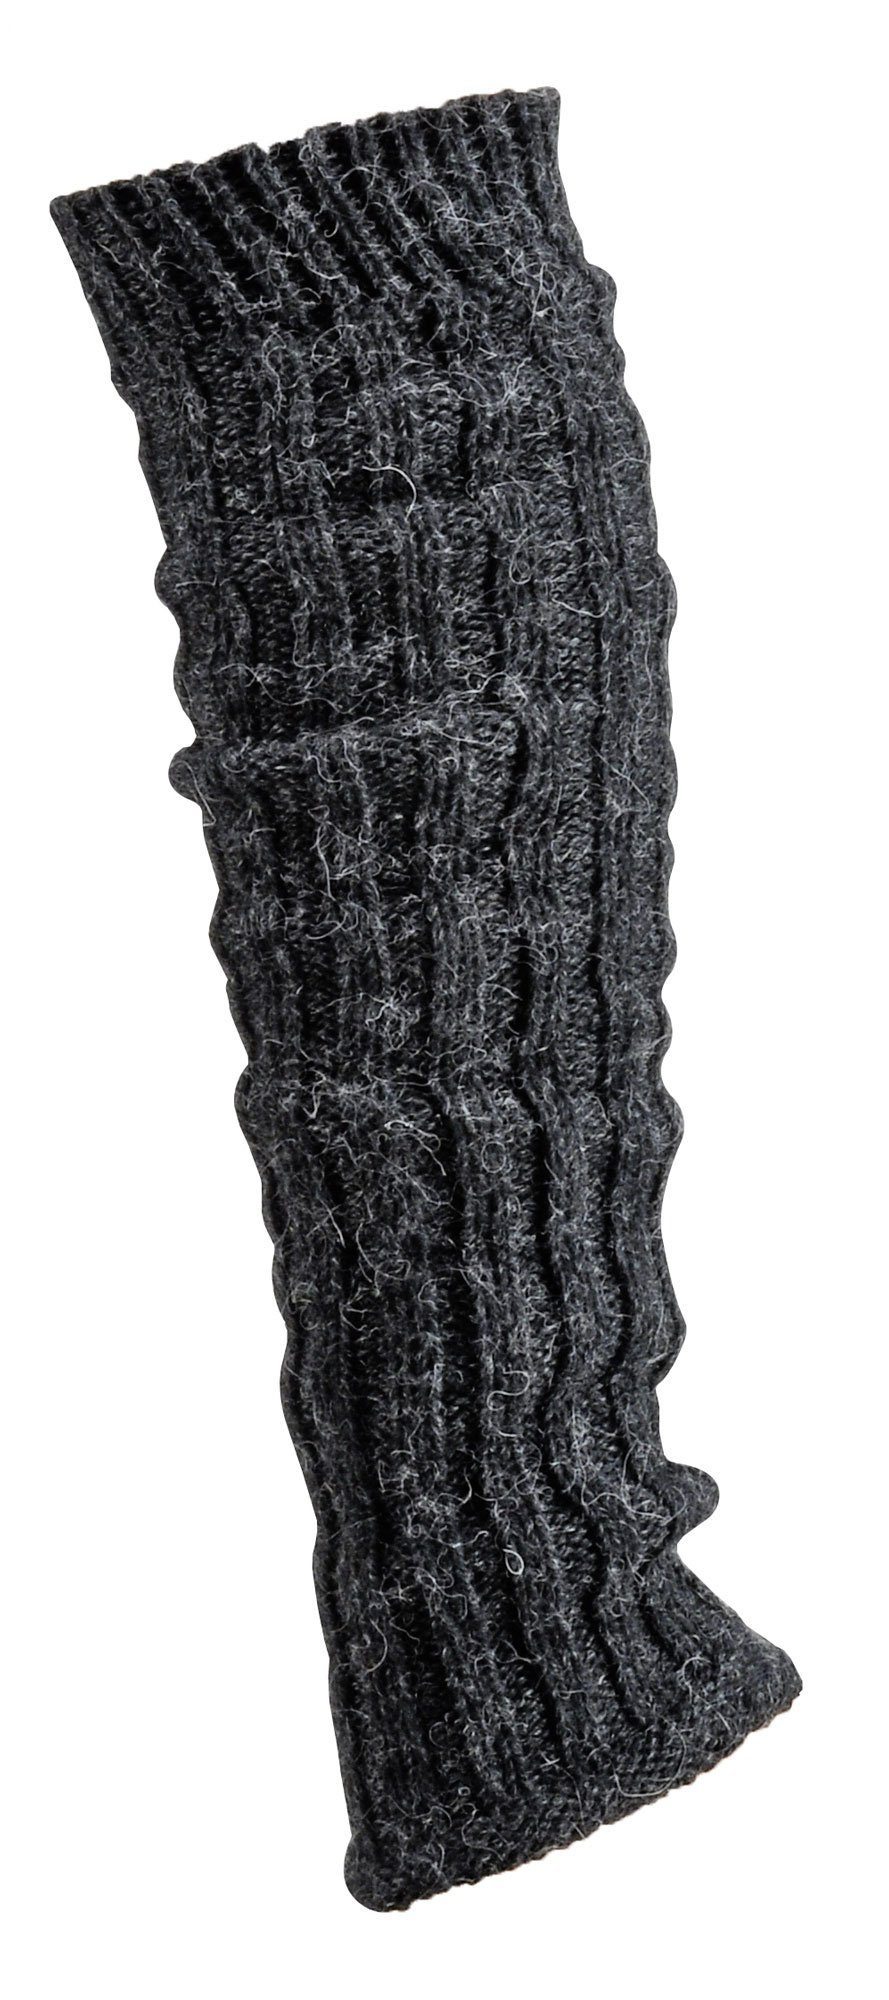 Wowerat Socken Grobstrick Stulpen mit Alpaka Schaf Wolle Legwamer Beinwärmer Universalgröße anthrazit